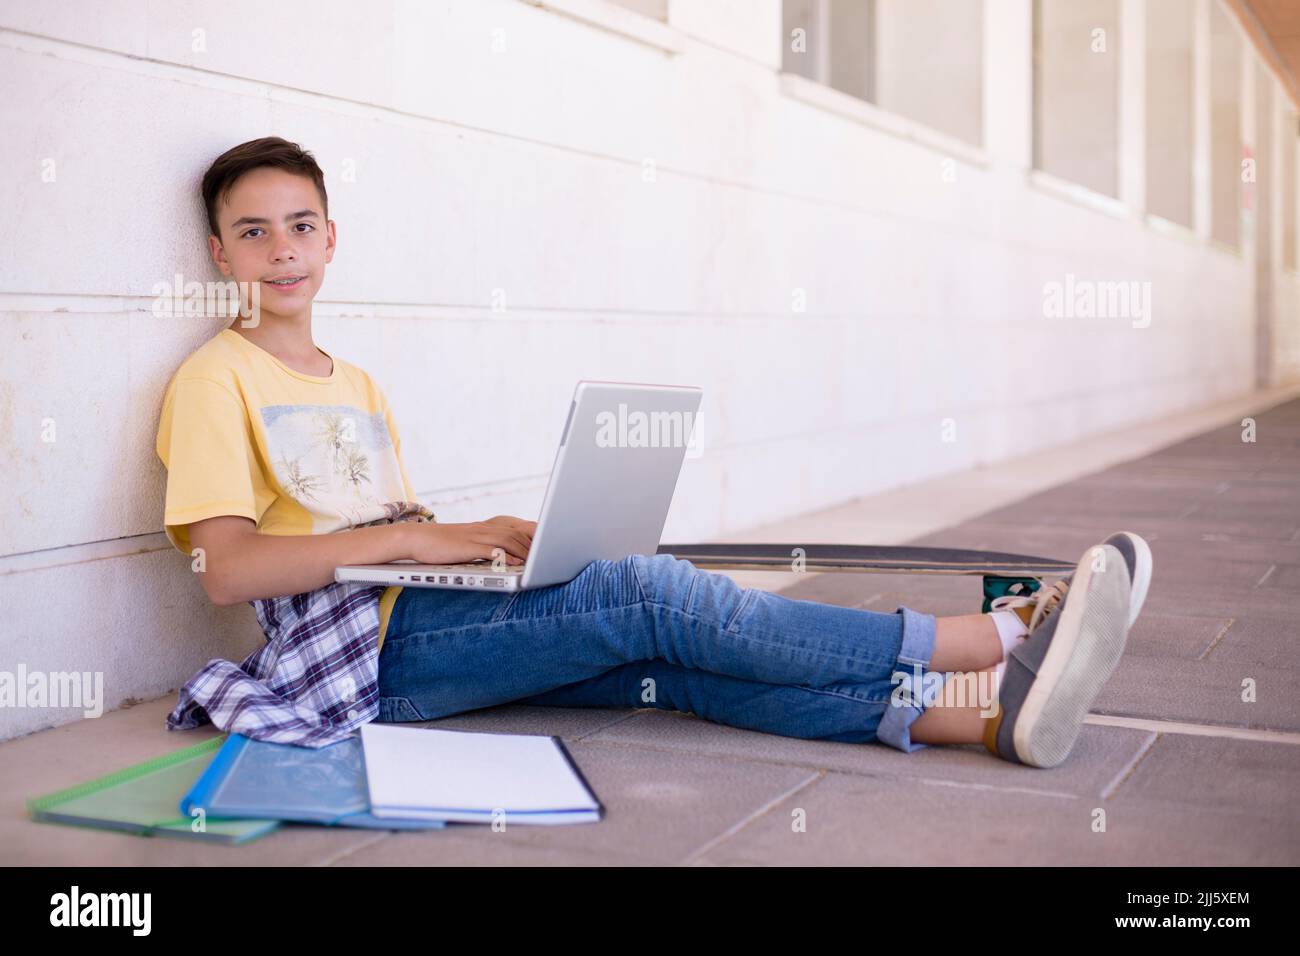 Jeune garçon caucasien souriant assis sur le sol à l'aide d'un ordinateur portable. Espace pour le texte. Banque D'Images